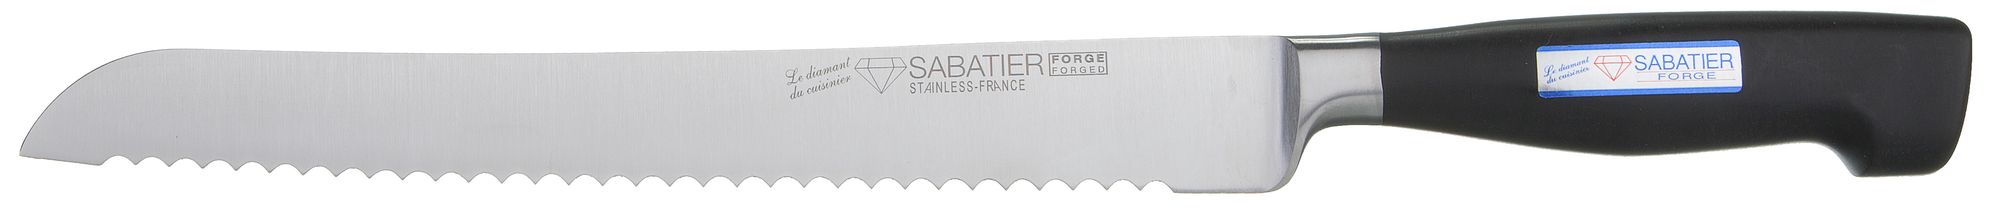 Couteau à pain Diamant Sabatier Forge 22 cm